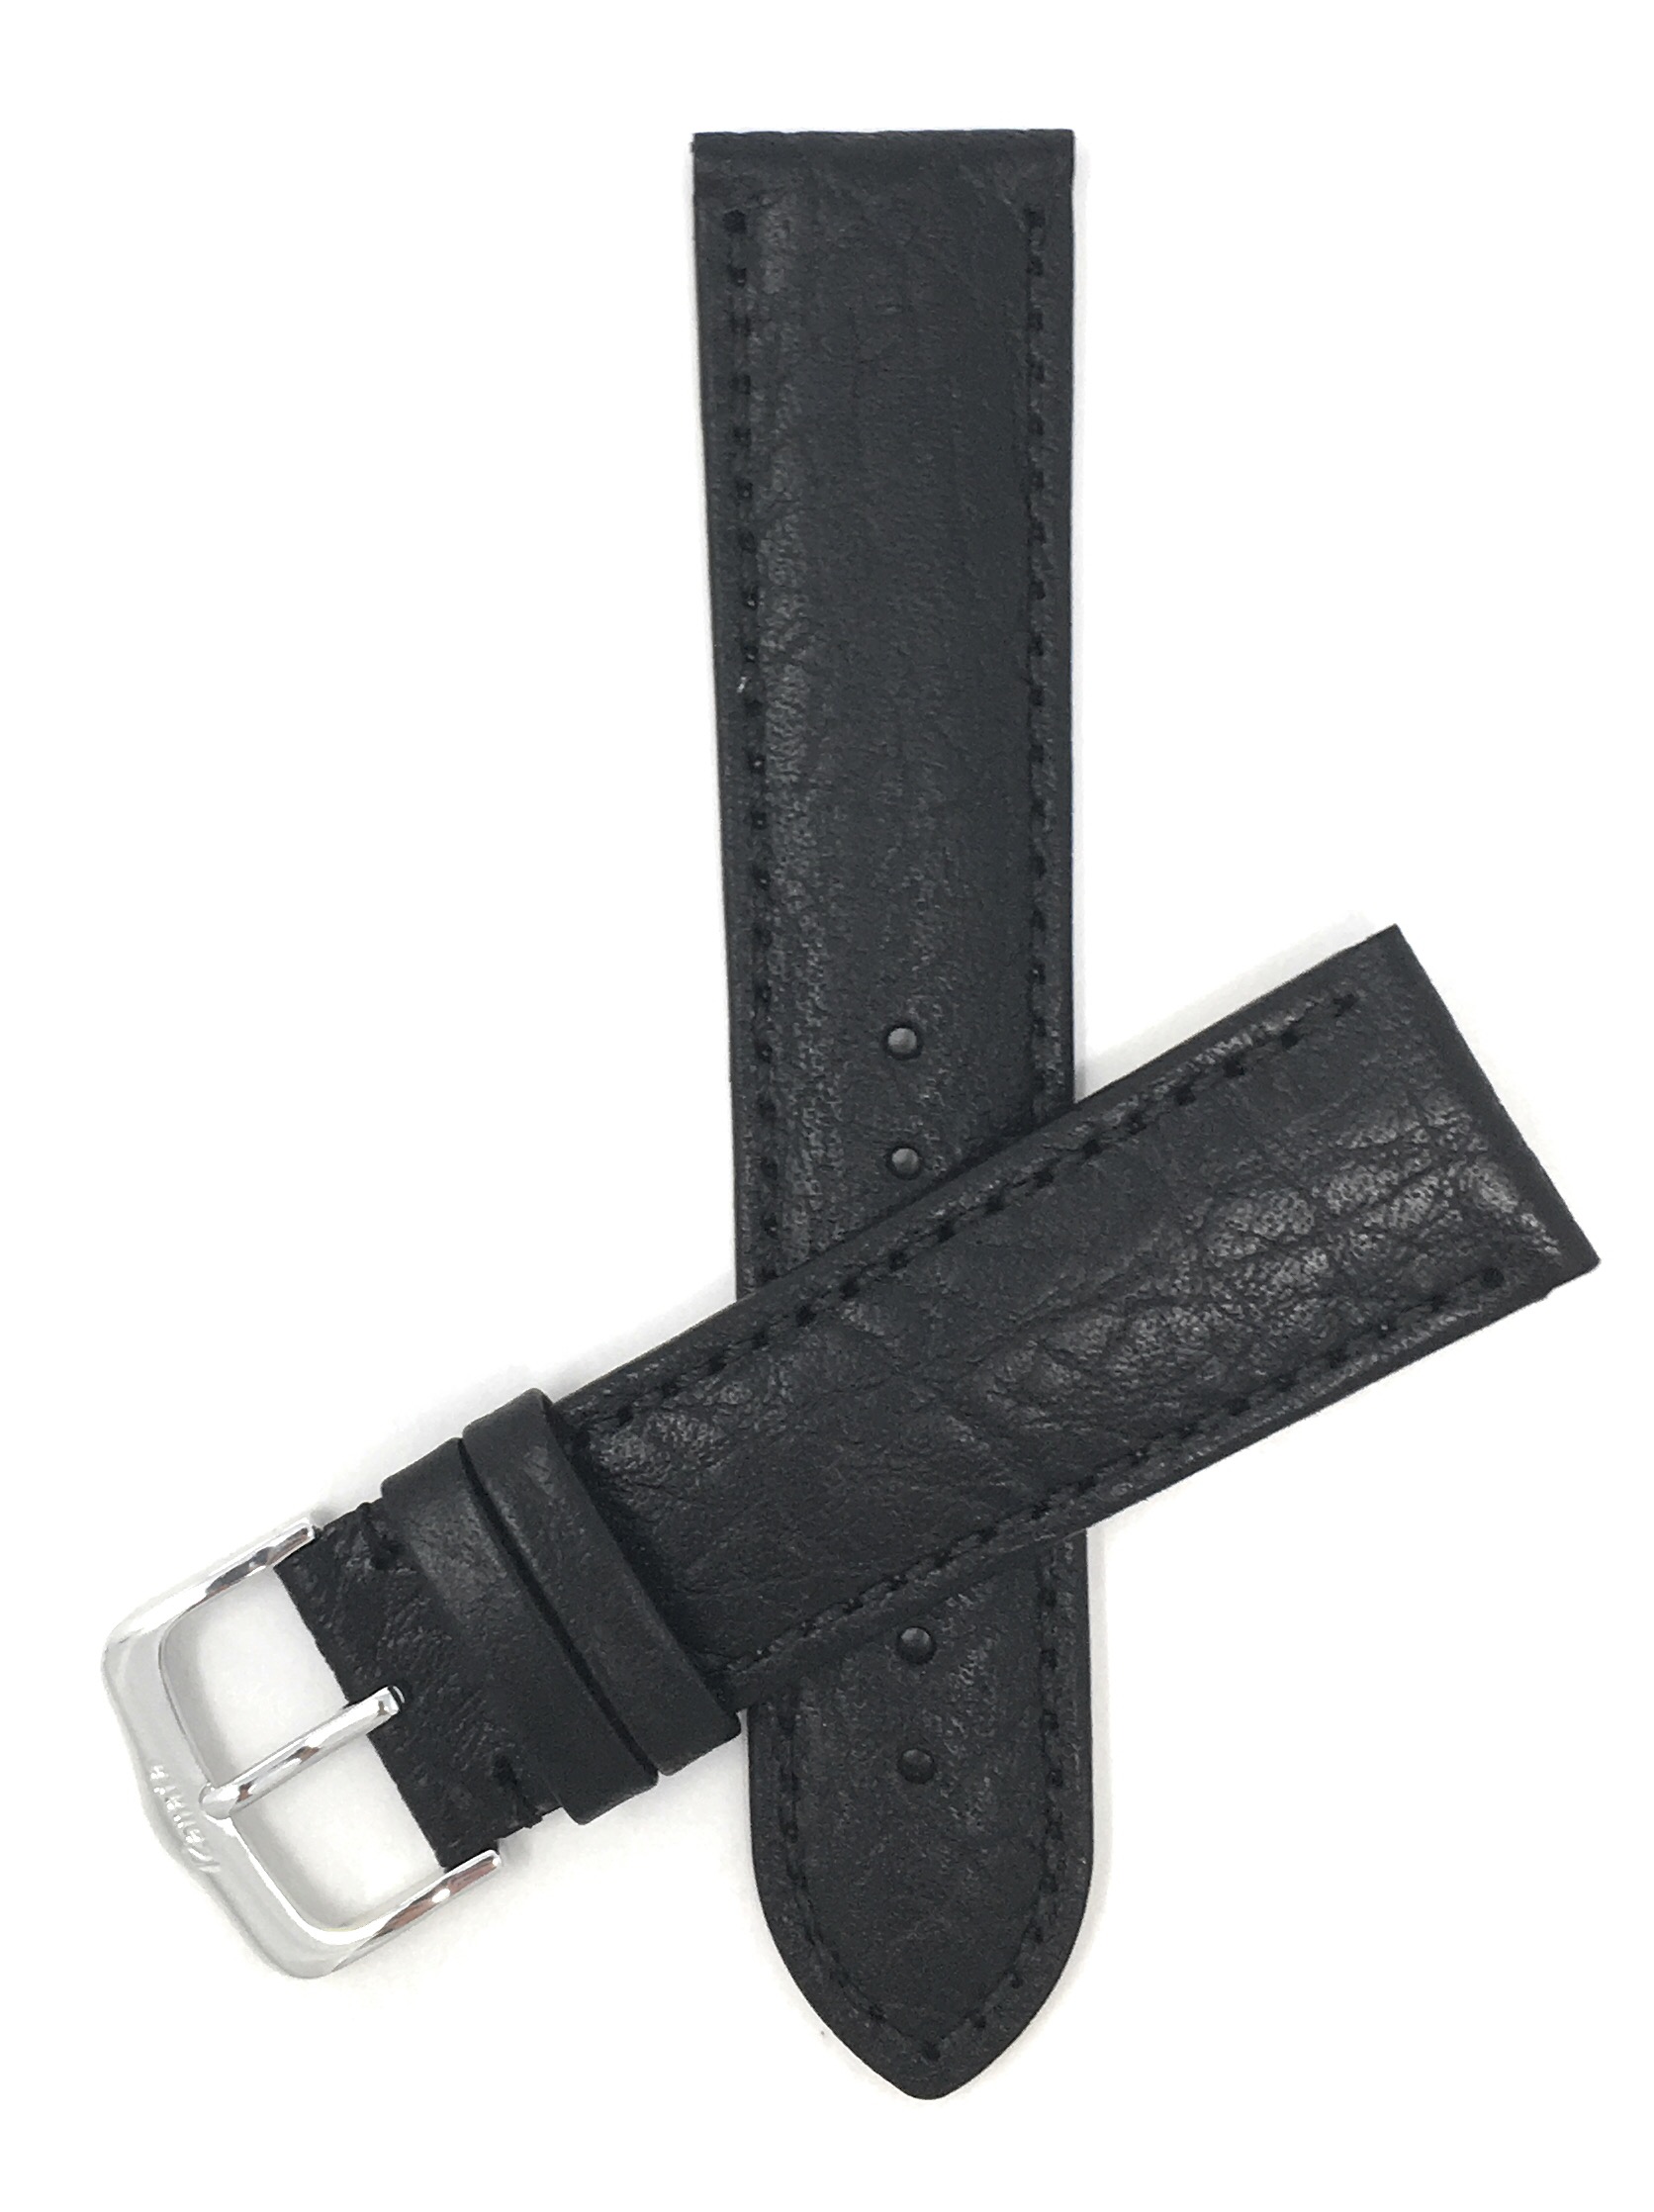 Bandini Watch Band, Leather Strap, Buffalo Pattern, 18mm 20mm, 22mm, 24mm